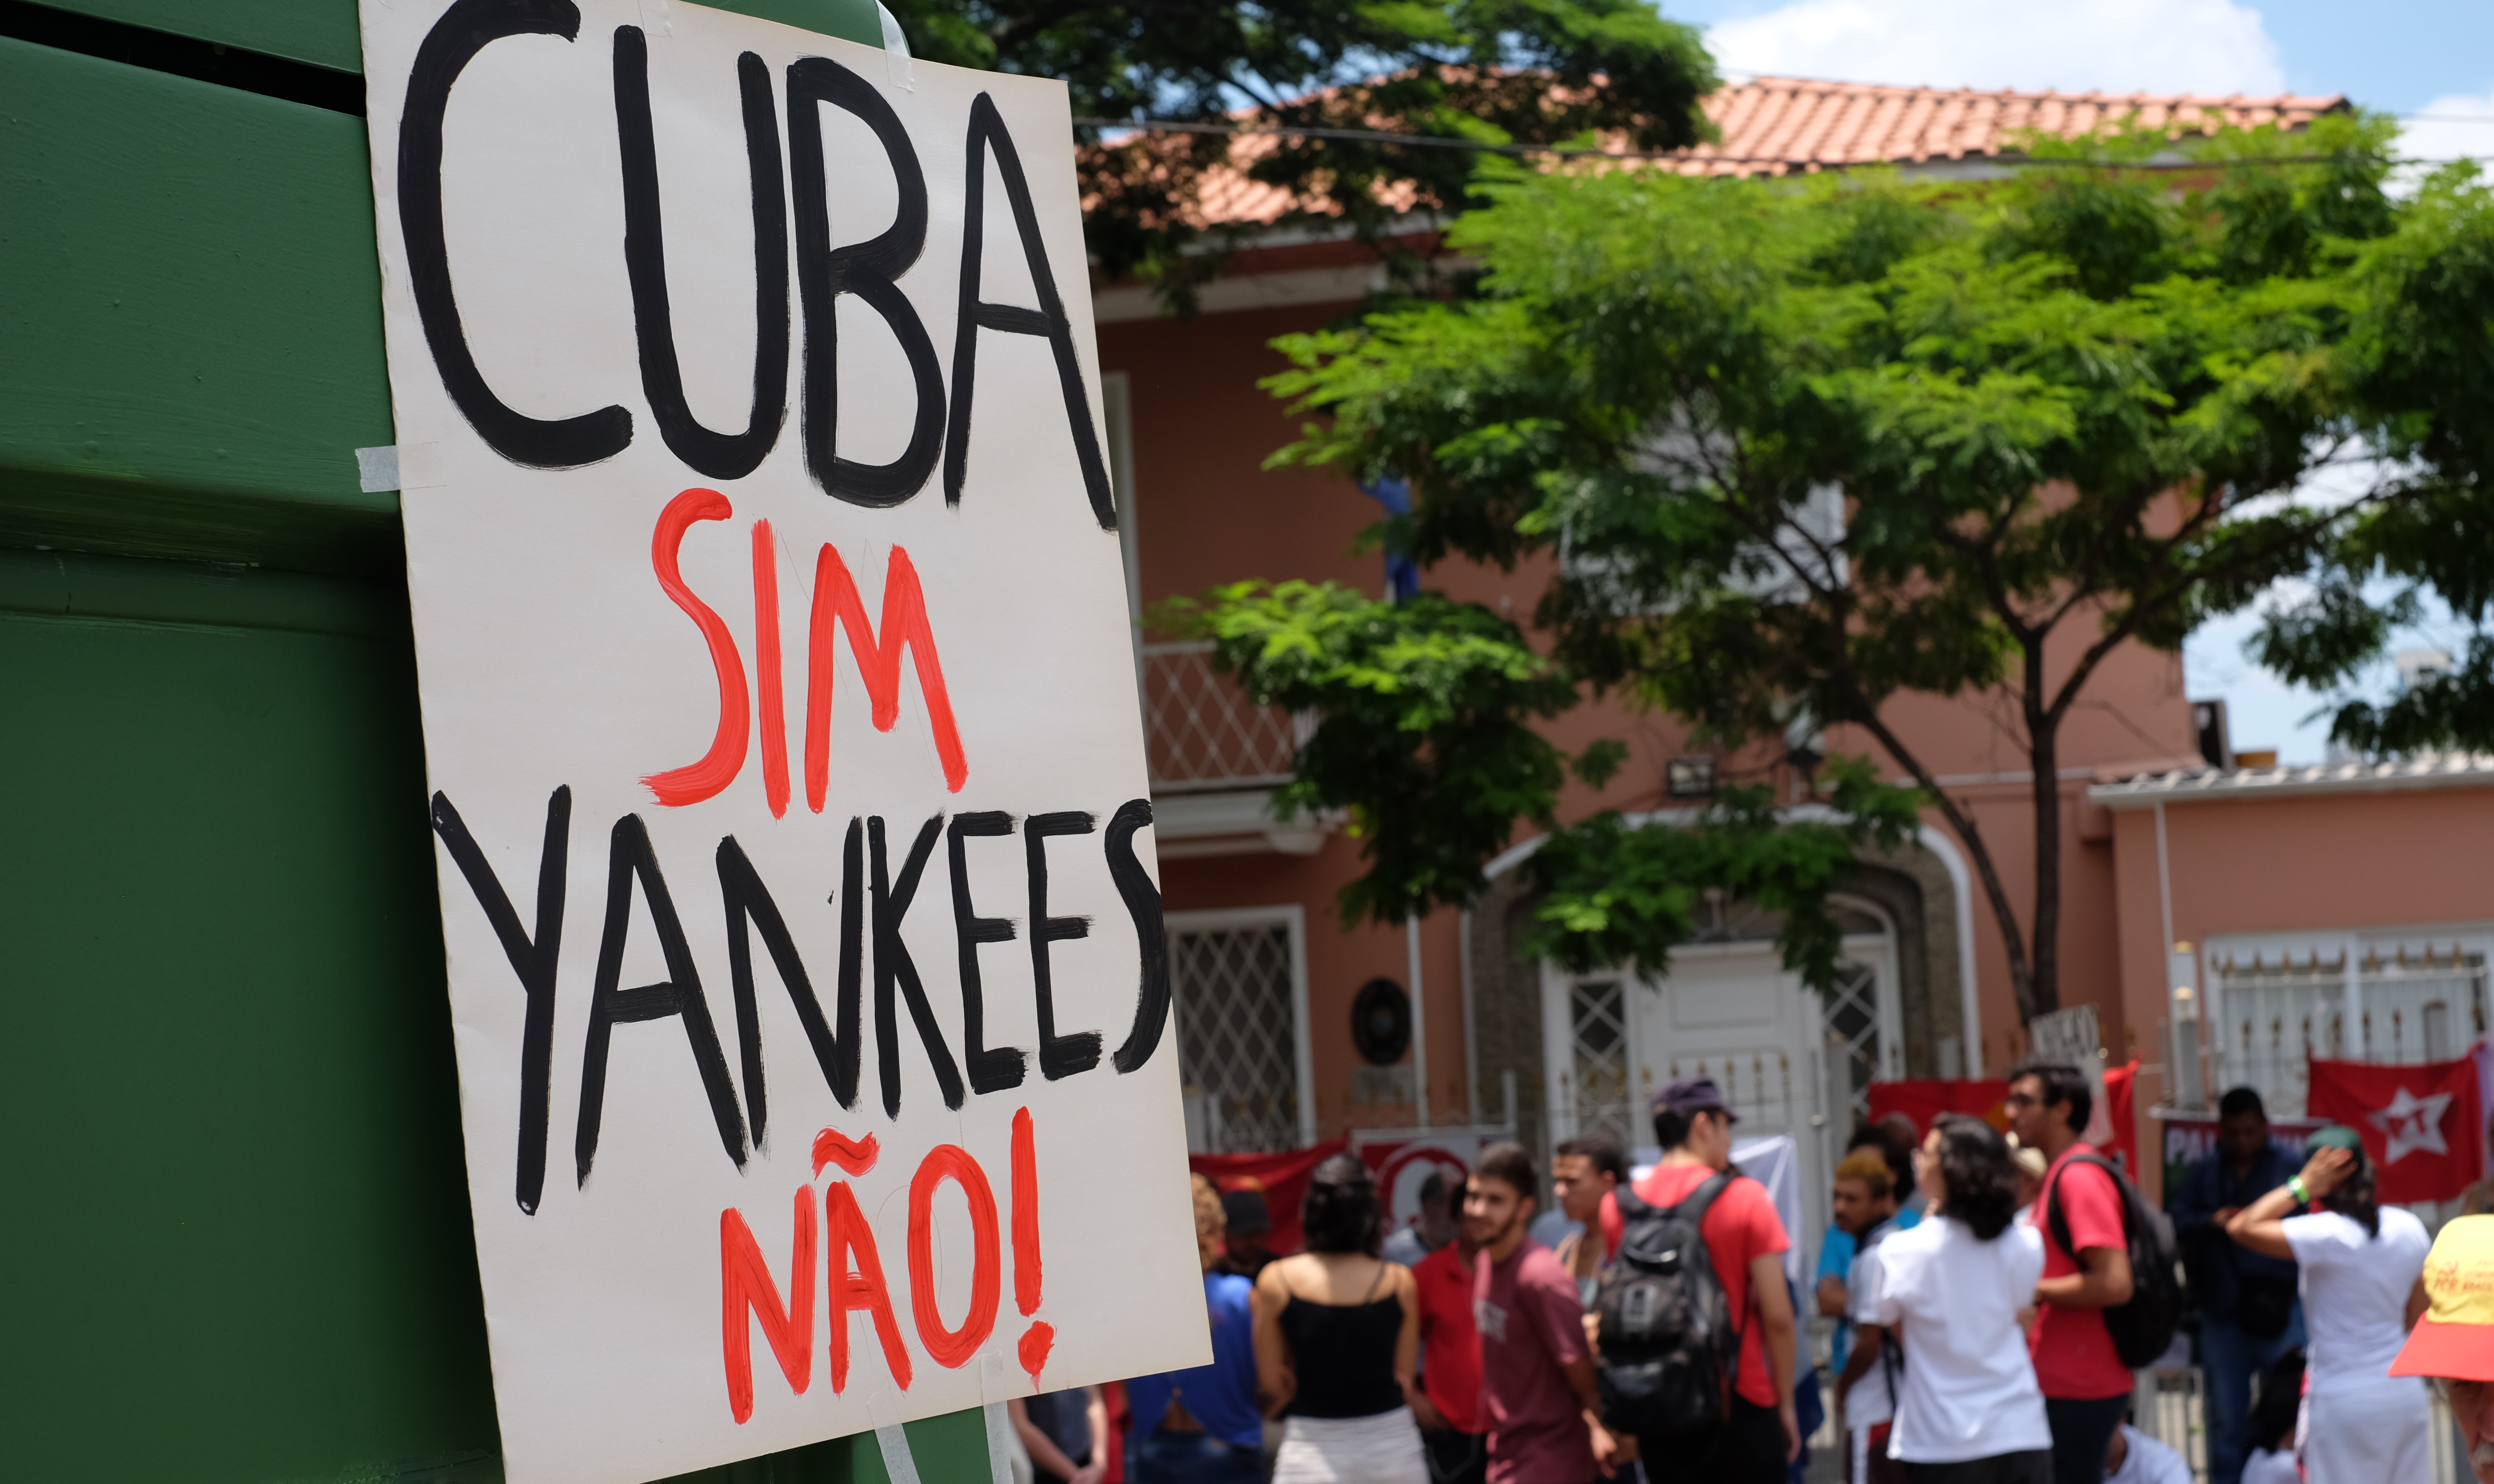 Centenas se manifestaram, no último sábado, em apoio a Cuba e seu processo constituinte. Do lado opositor, oito pessoas compareceram